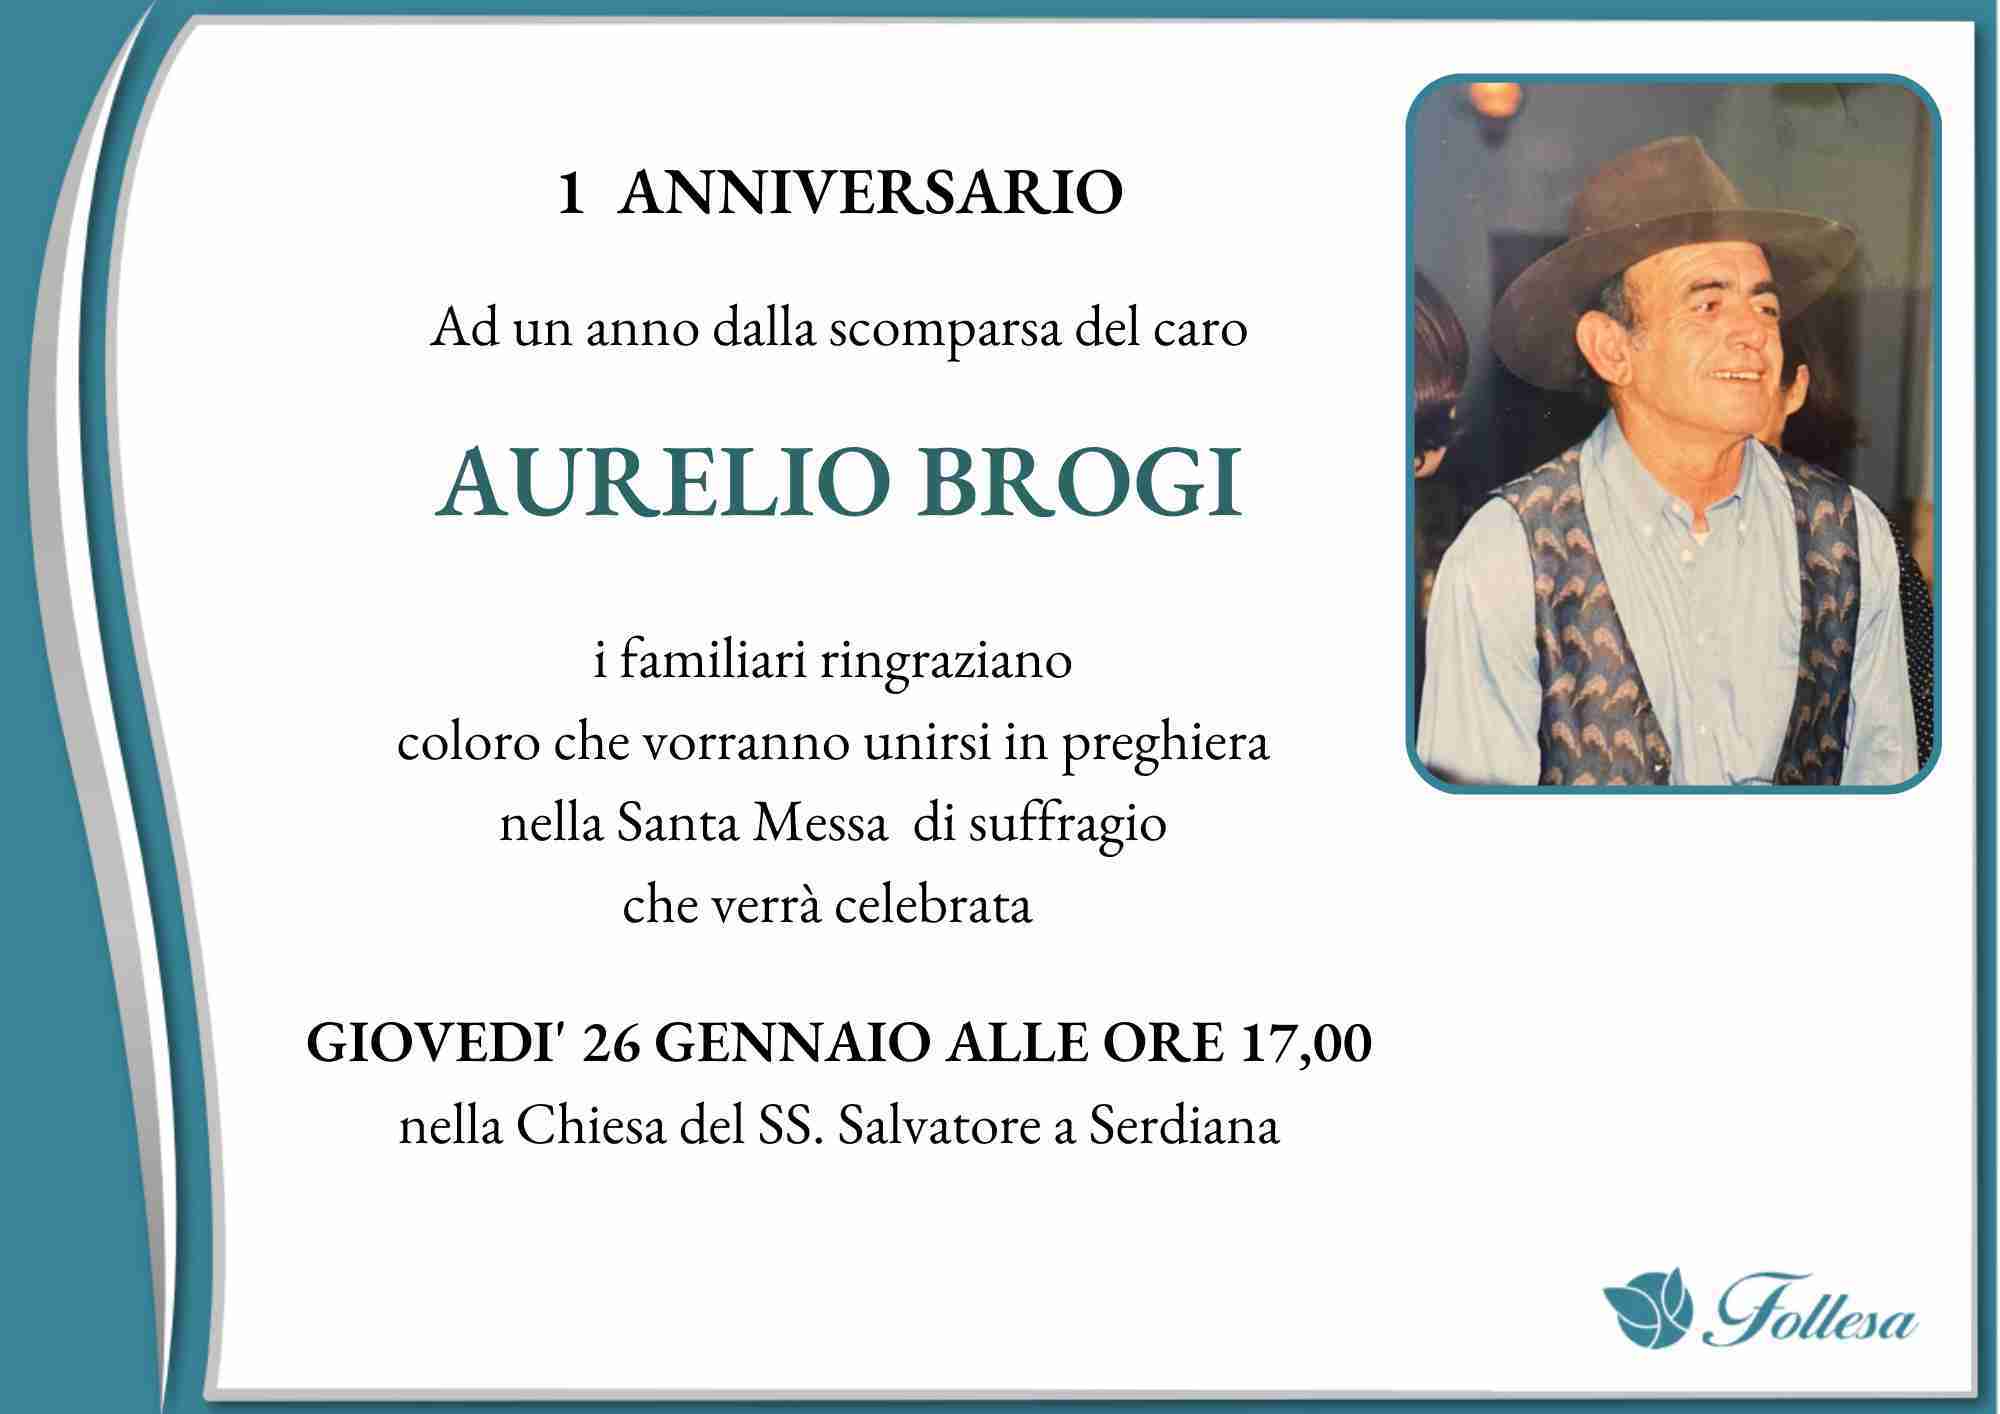 Aurelio Brogi